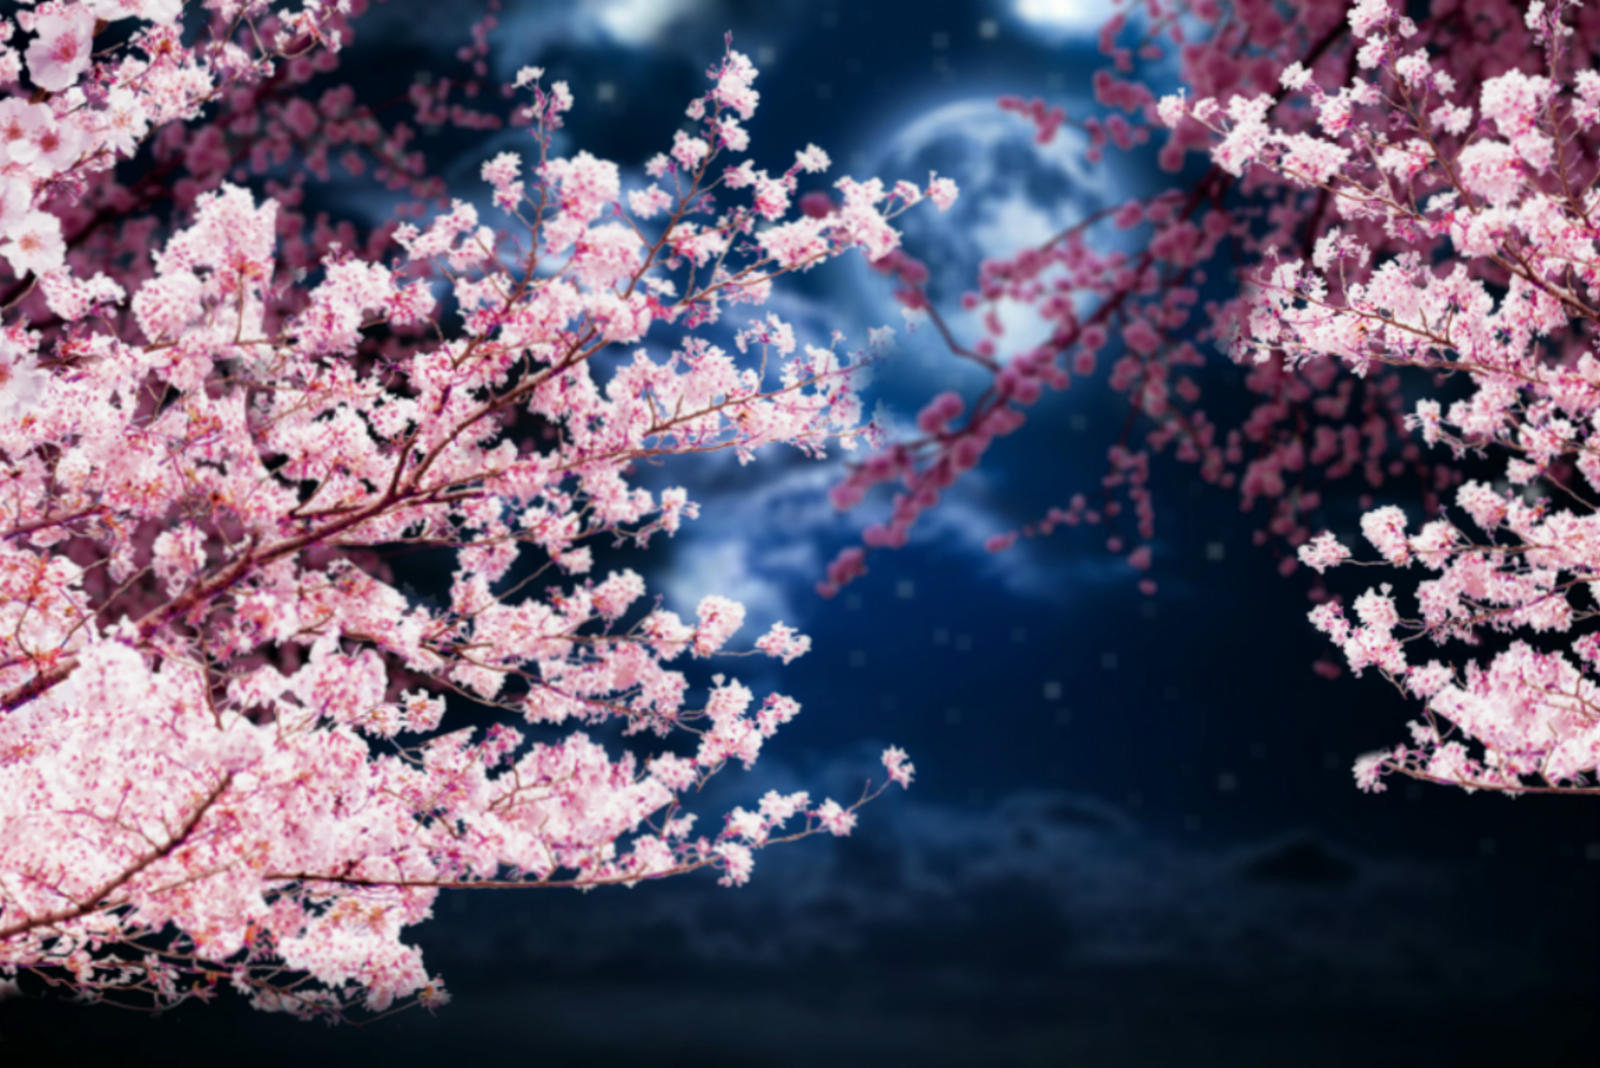 La flor de cerezo de la luna by nayareth on DeviantArt